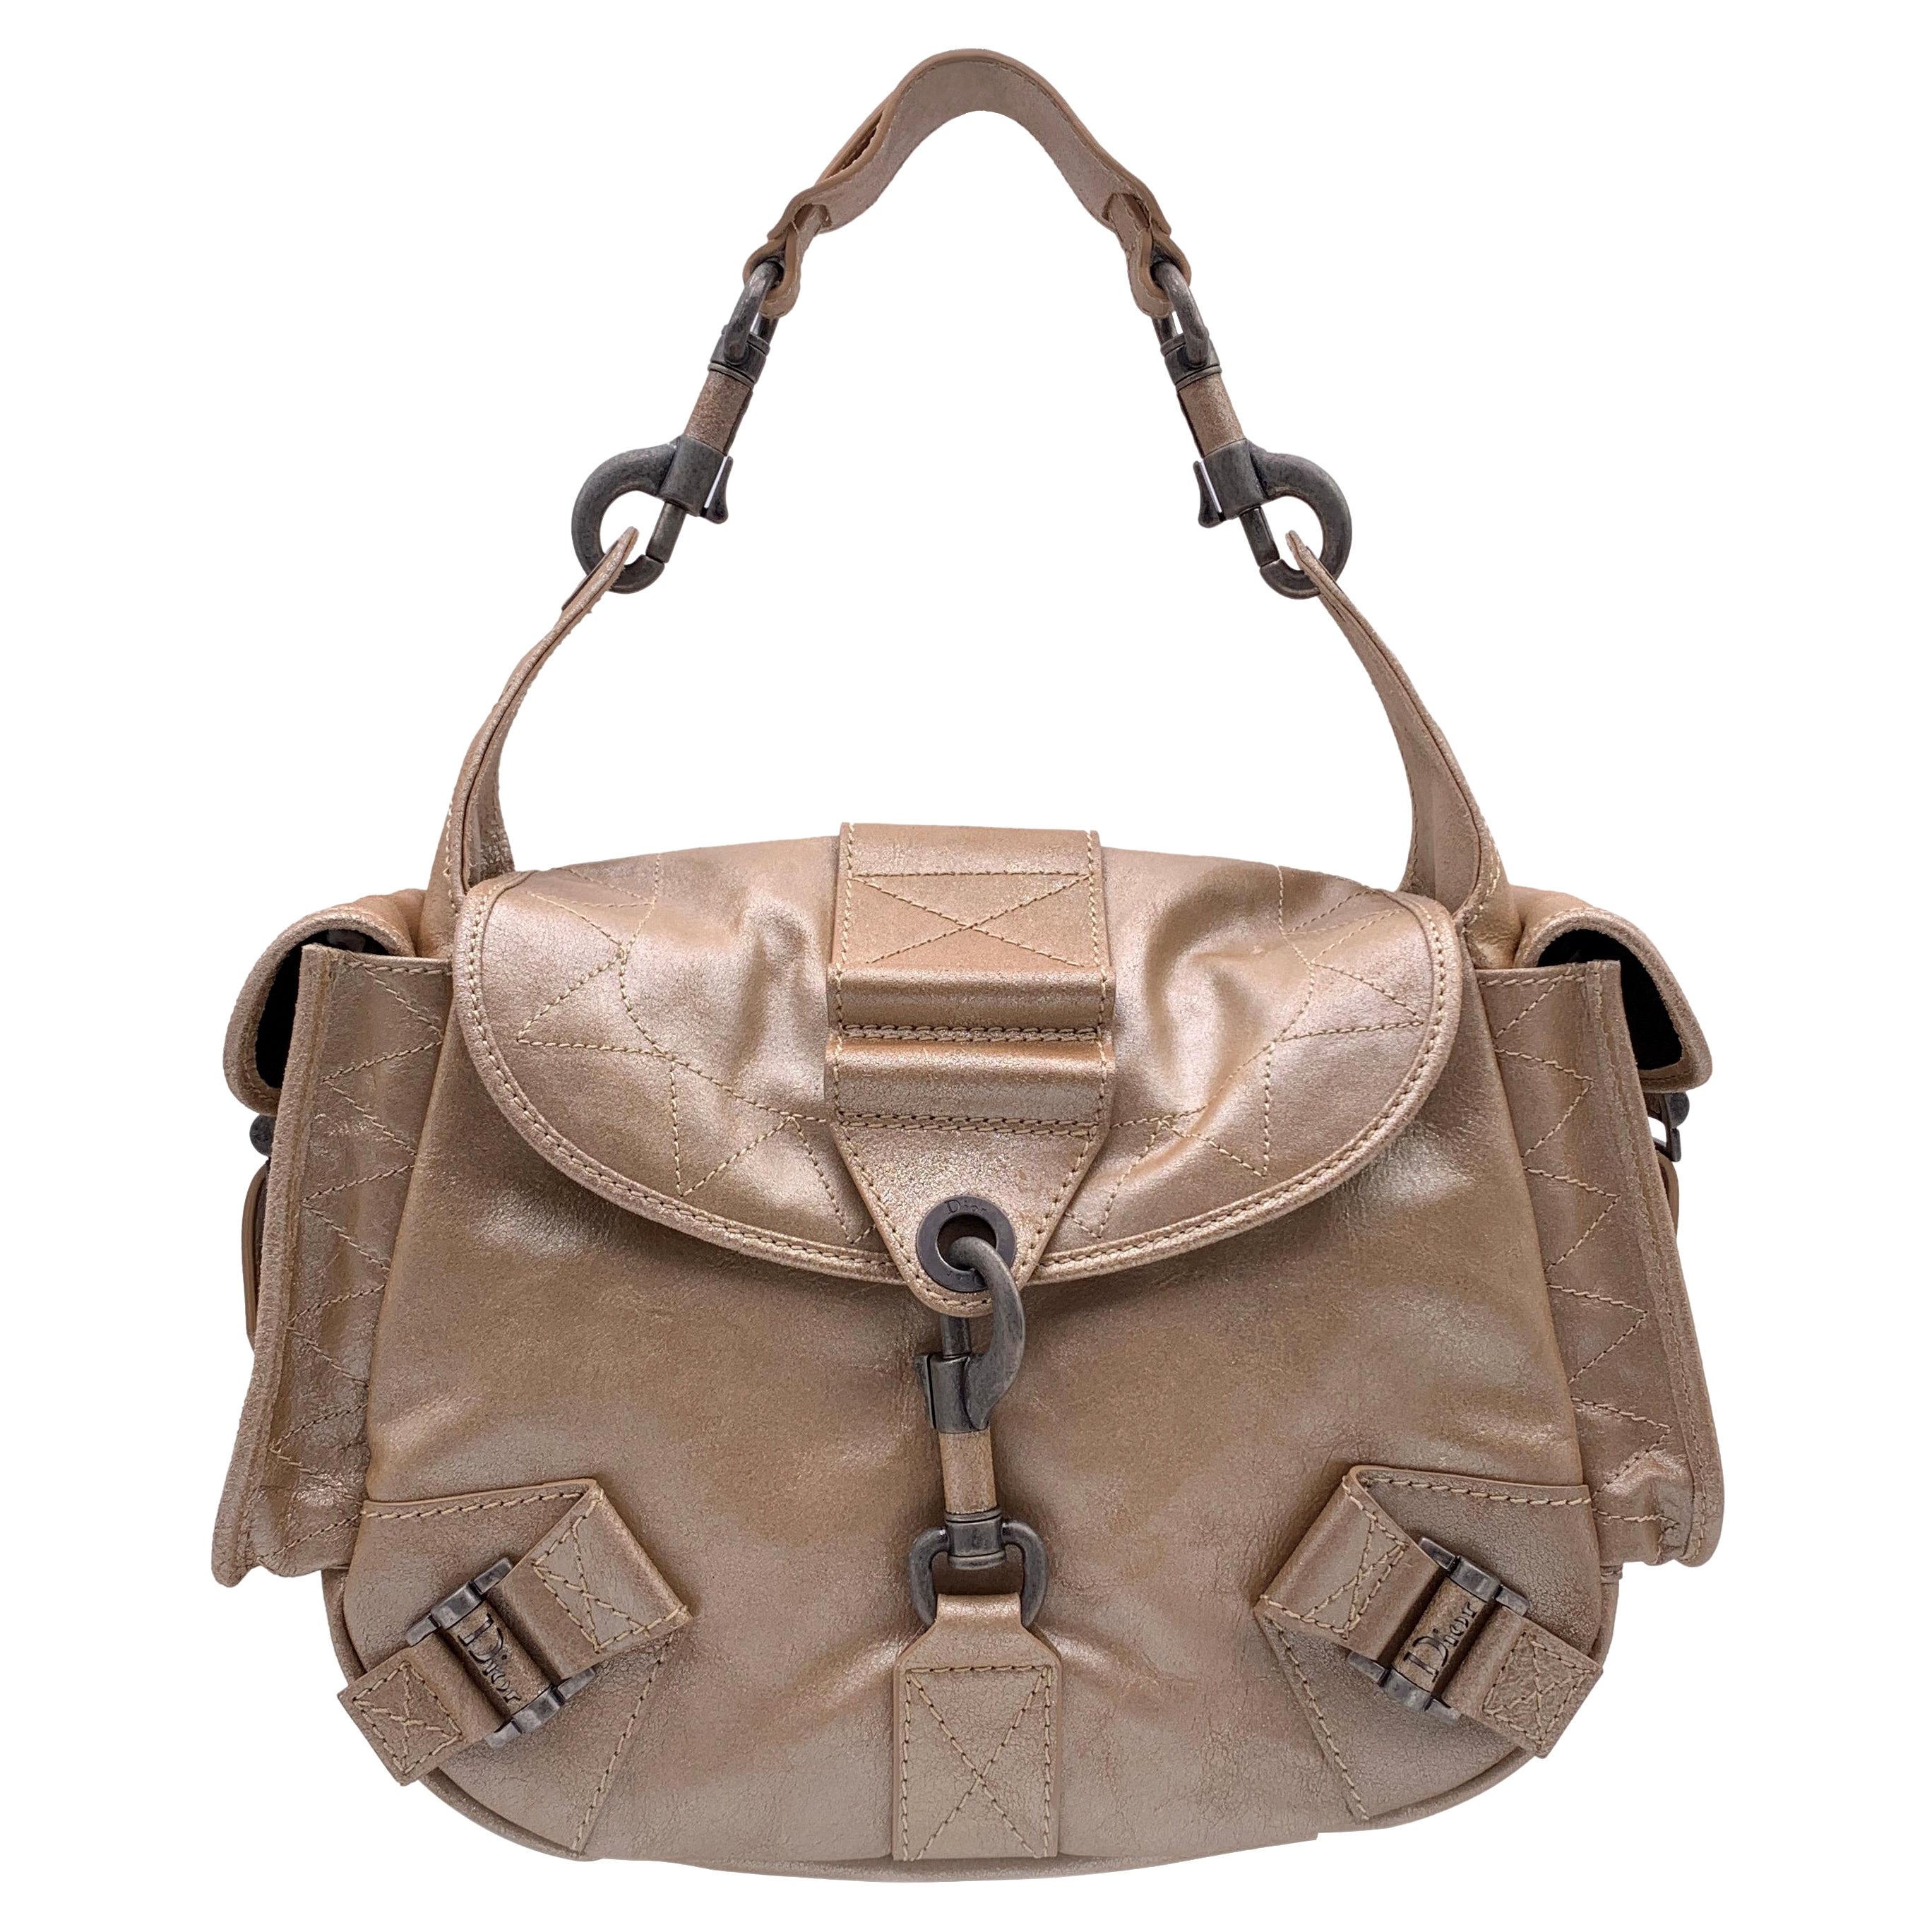 Christian Dior Beige Leather Rebelle Shoulder Bag Handbag